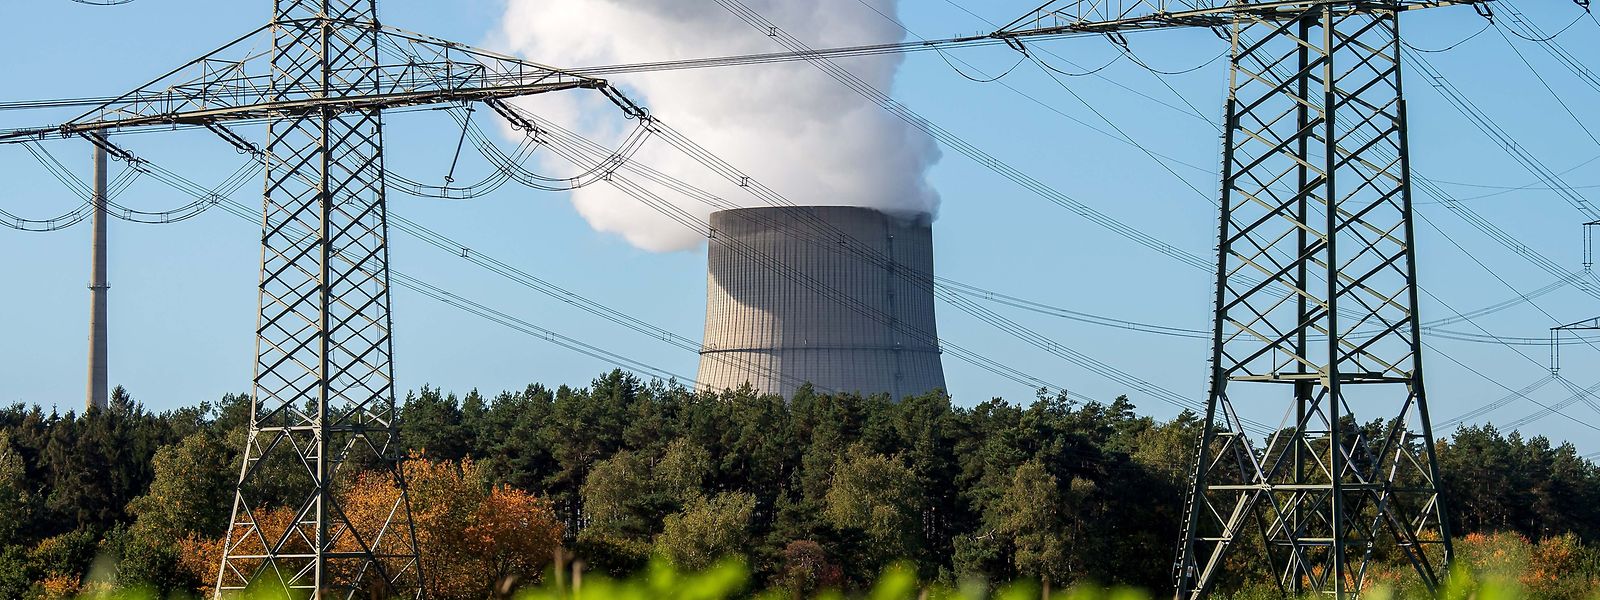 Emsland in Niedersachsen ist einer der betroffenen Reaktoren.